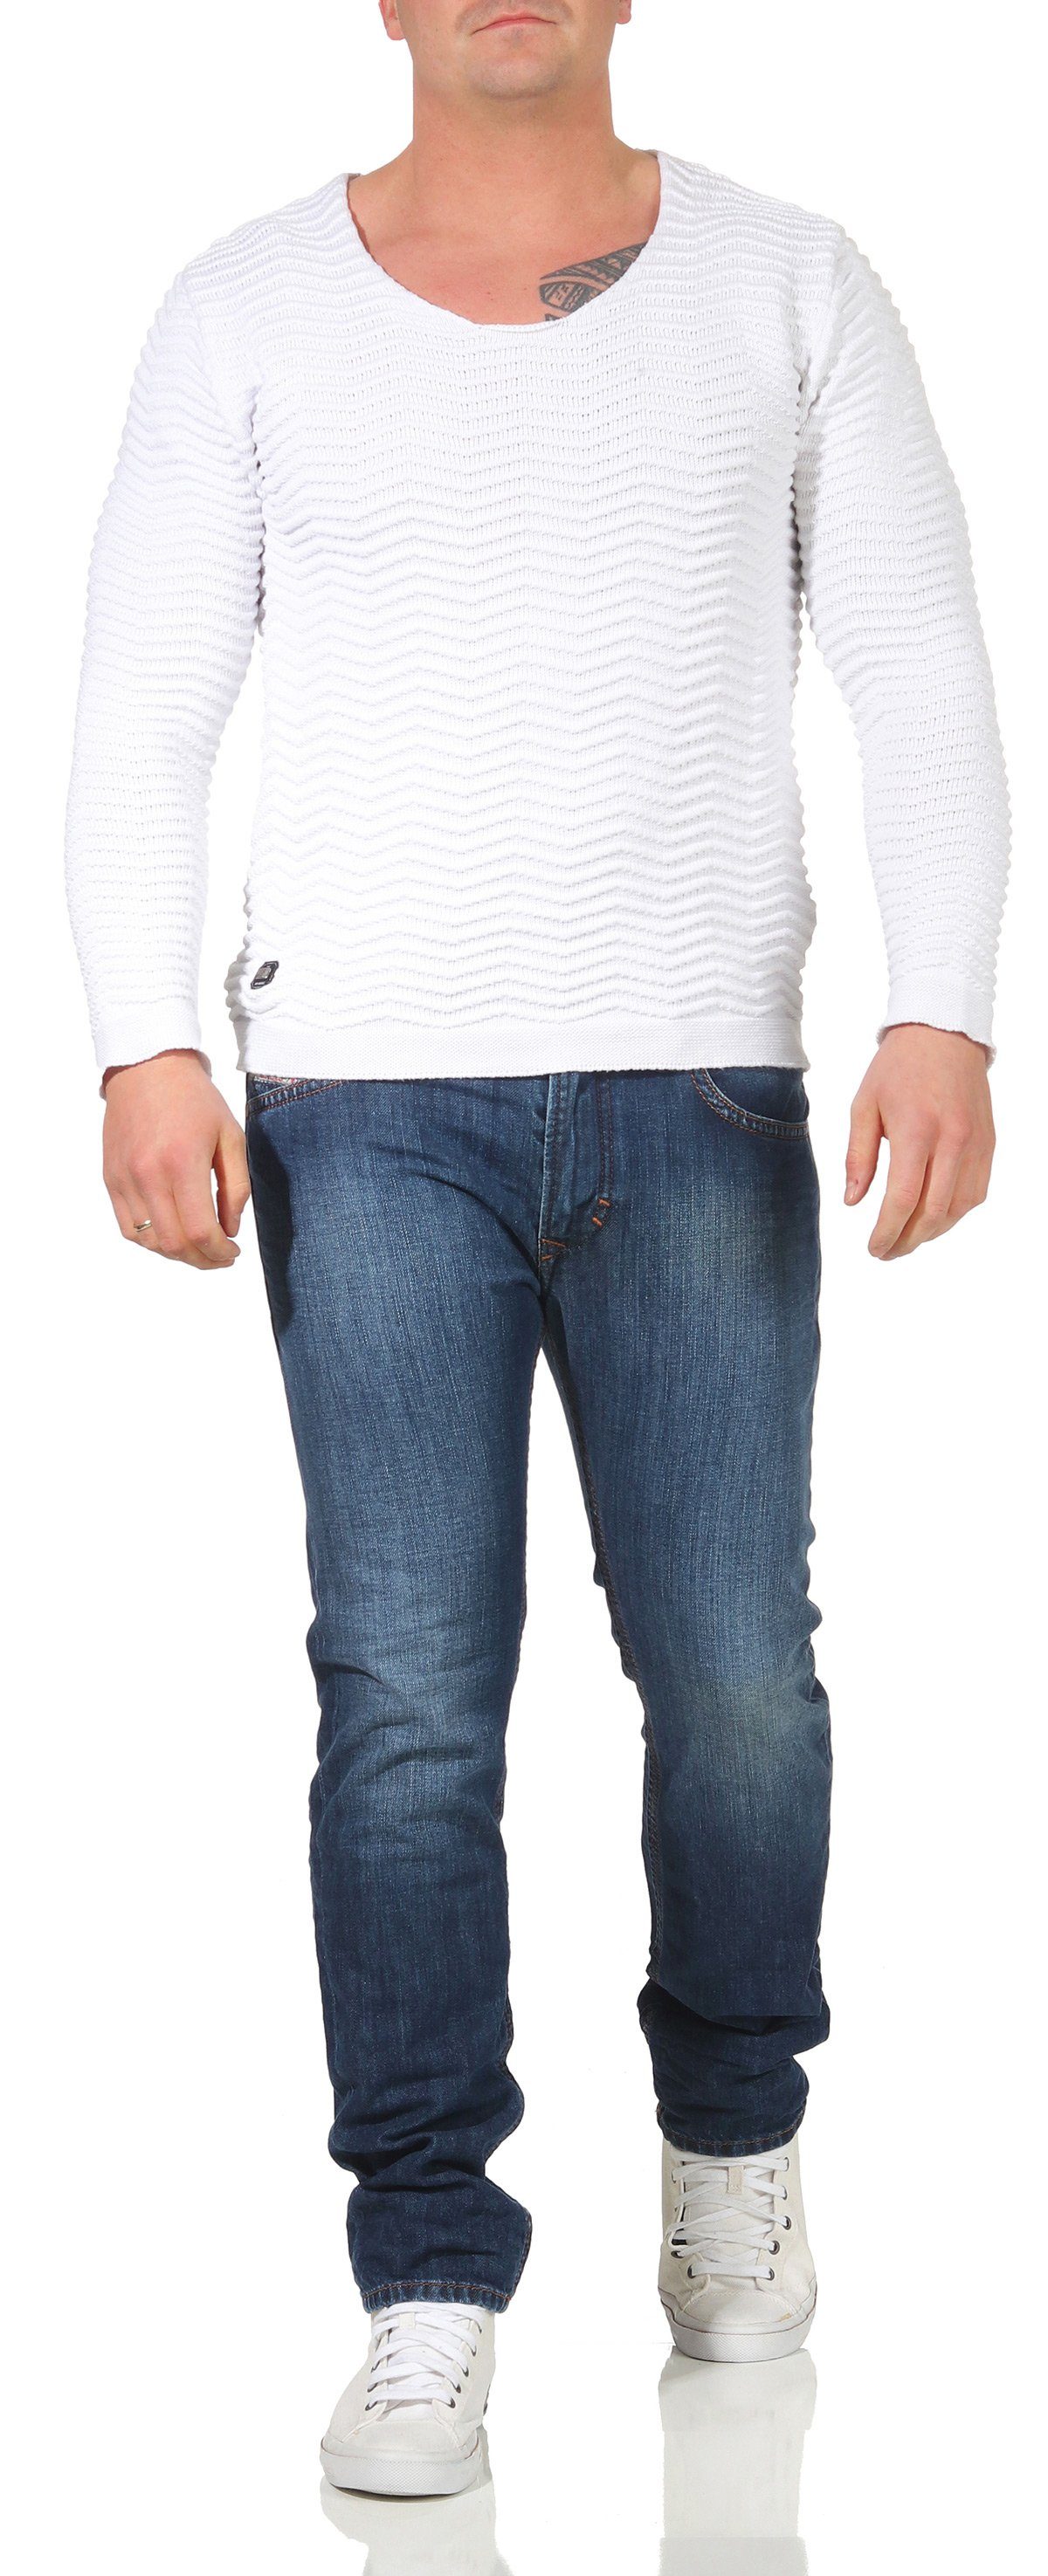 5-Pocket-Style, Thavar Röhrenjeans, Used-Look Diesel Slim-fit-Jeans 0855L Blau, Herren